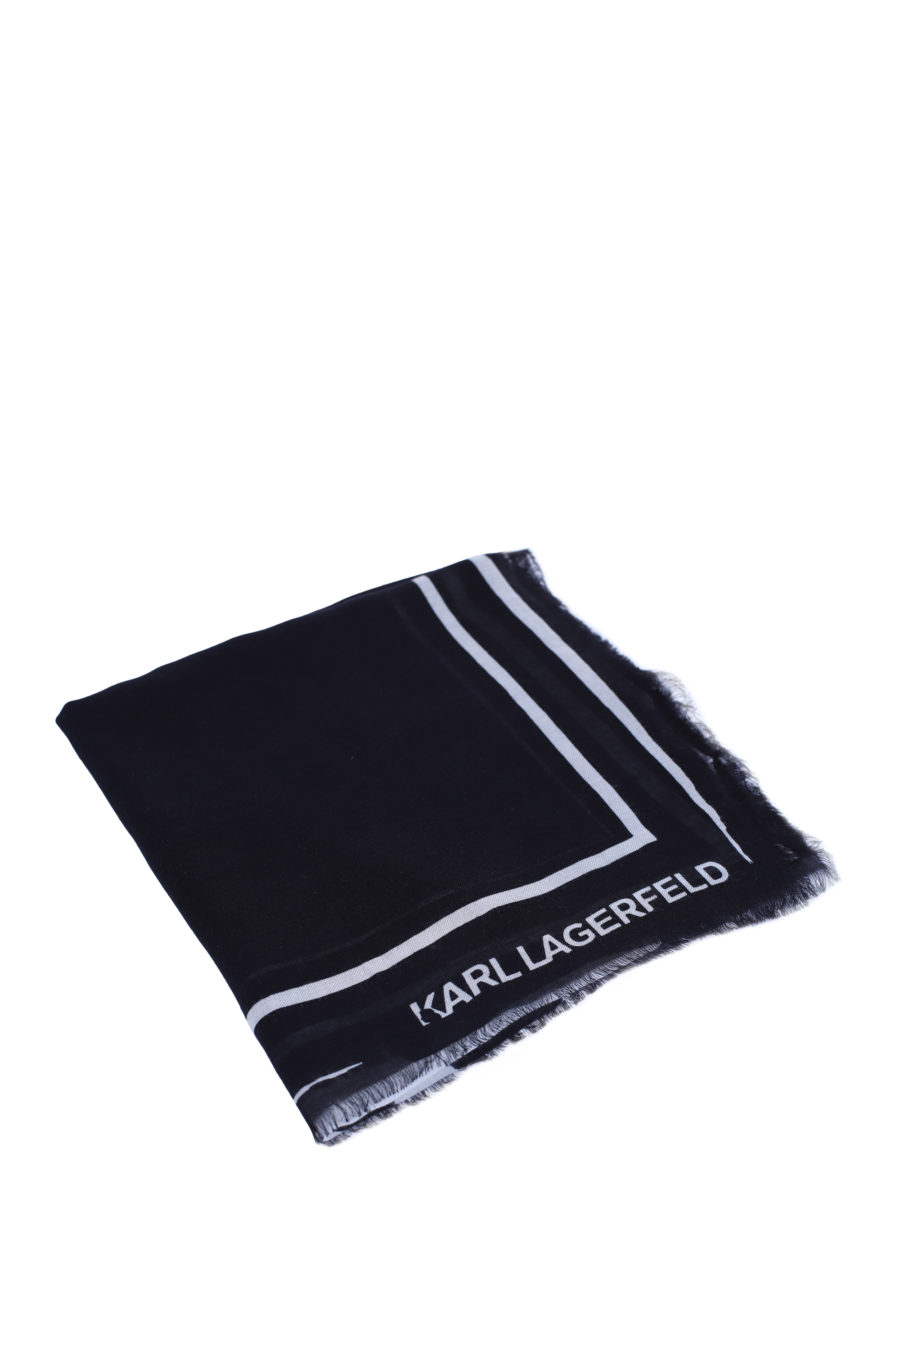 Bufanda negra con logo blanco grande - IMG 9142